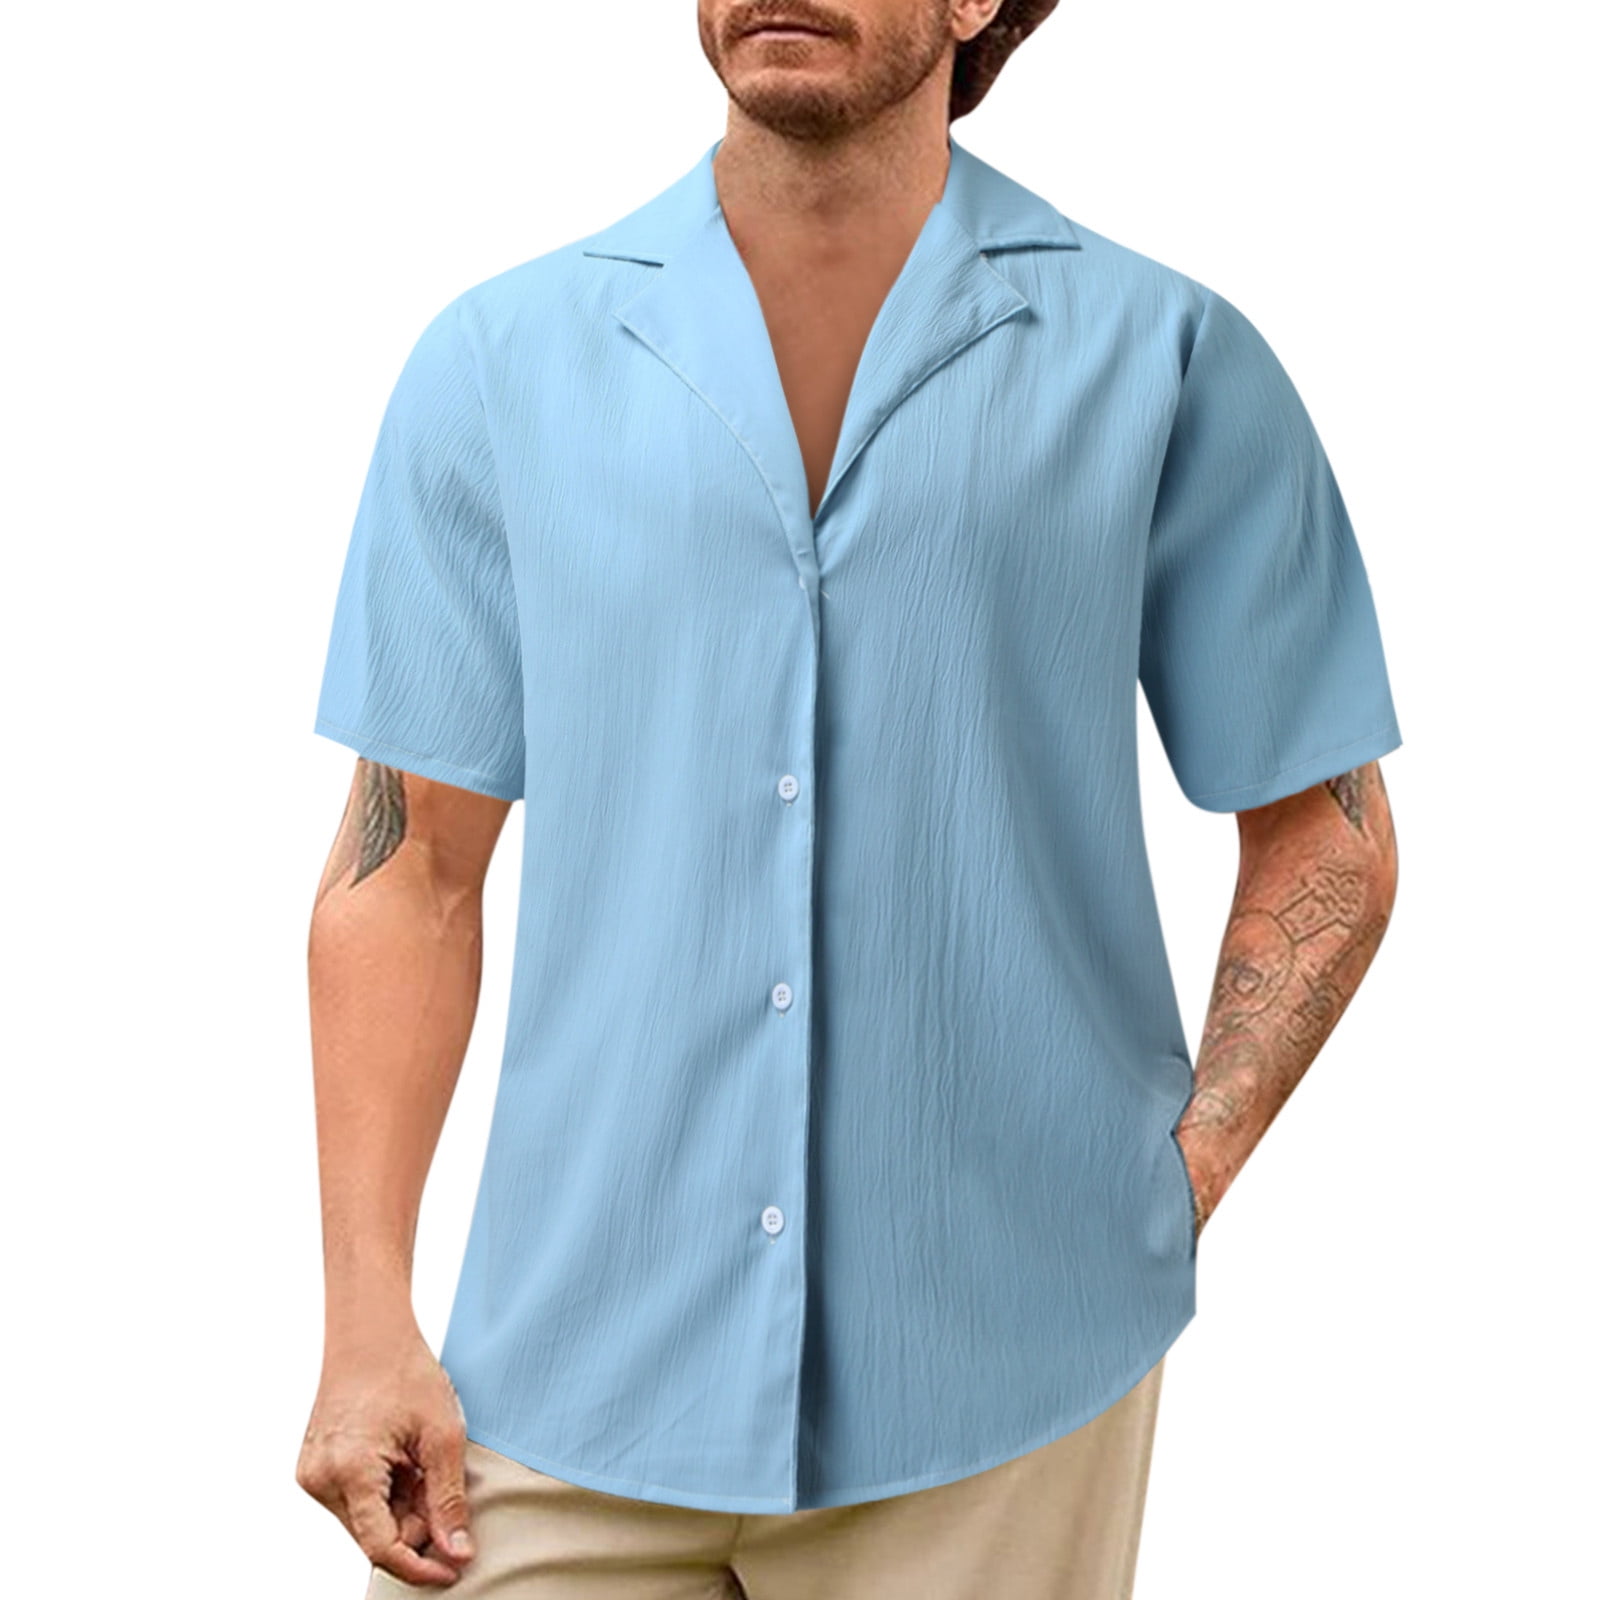  WYUTX Mens Hawaiian Shirt Casual Button Down Shirt